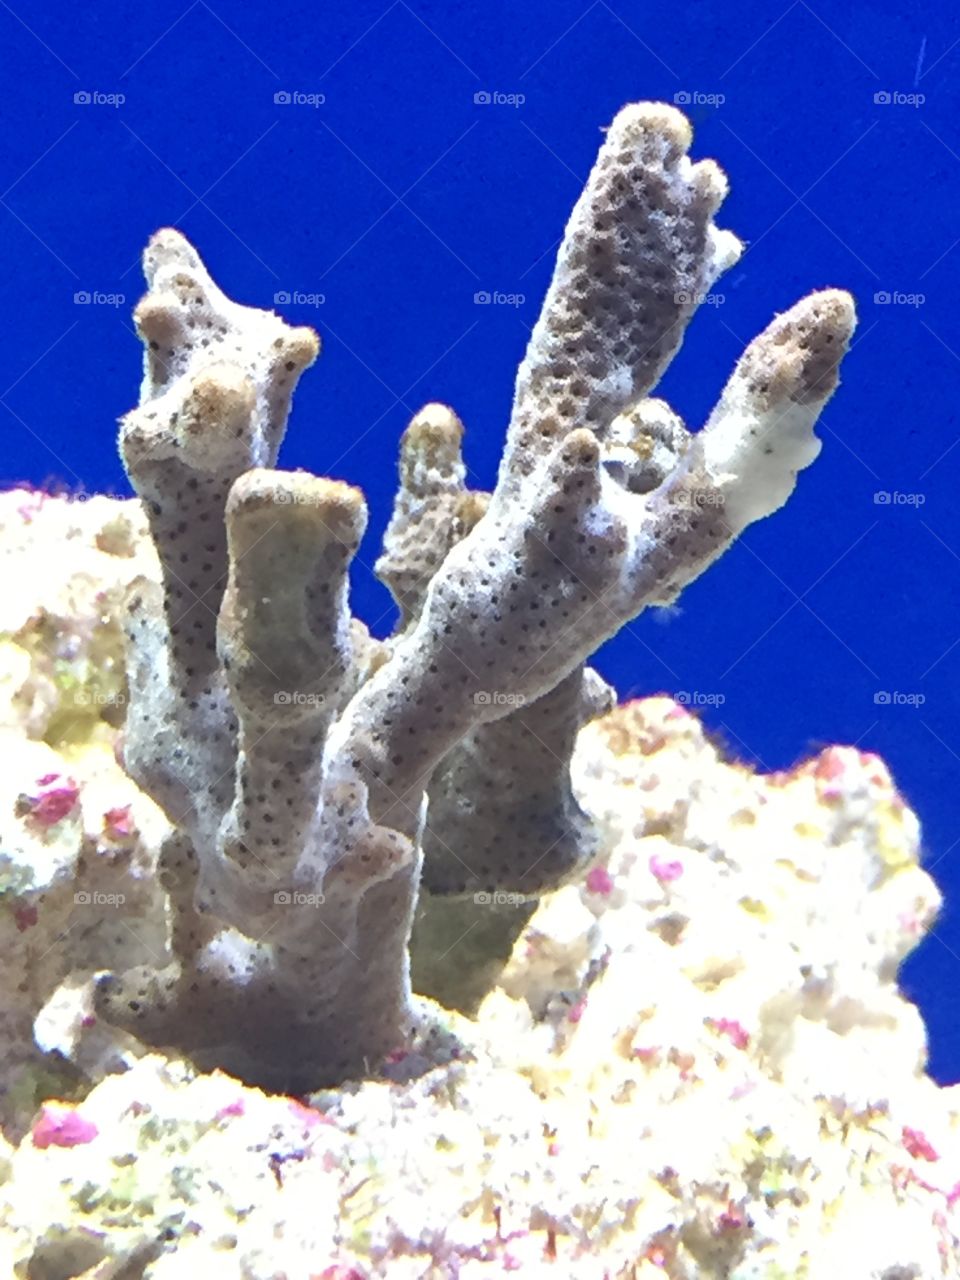 Aquarium marine coral